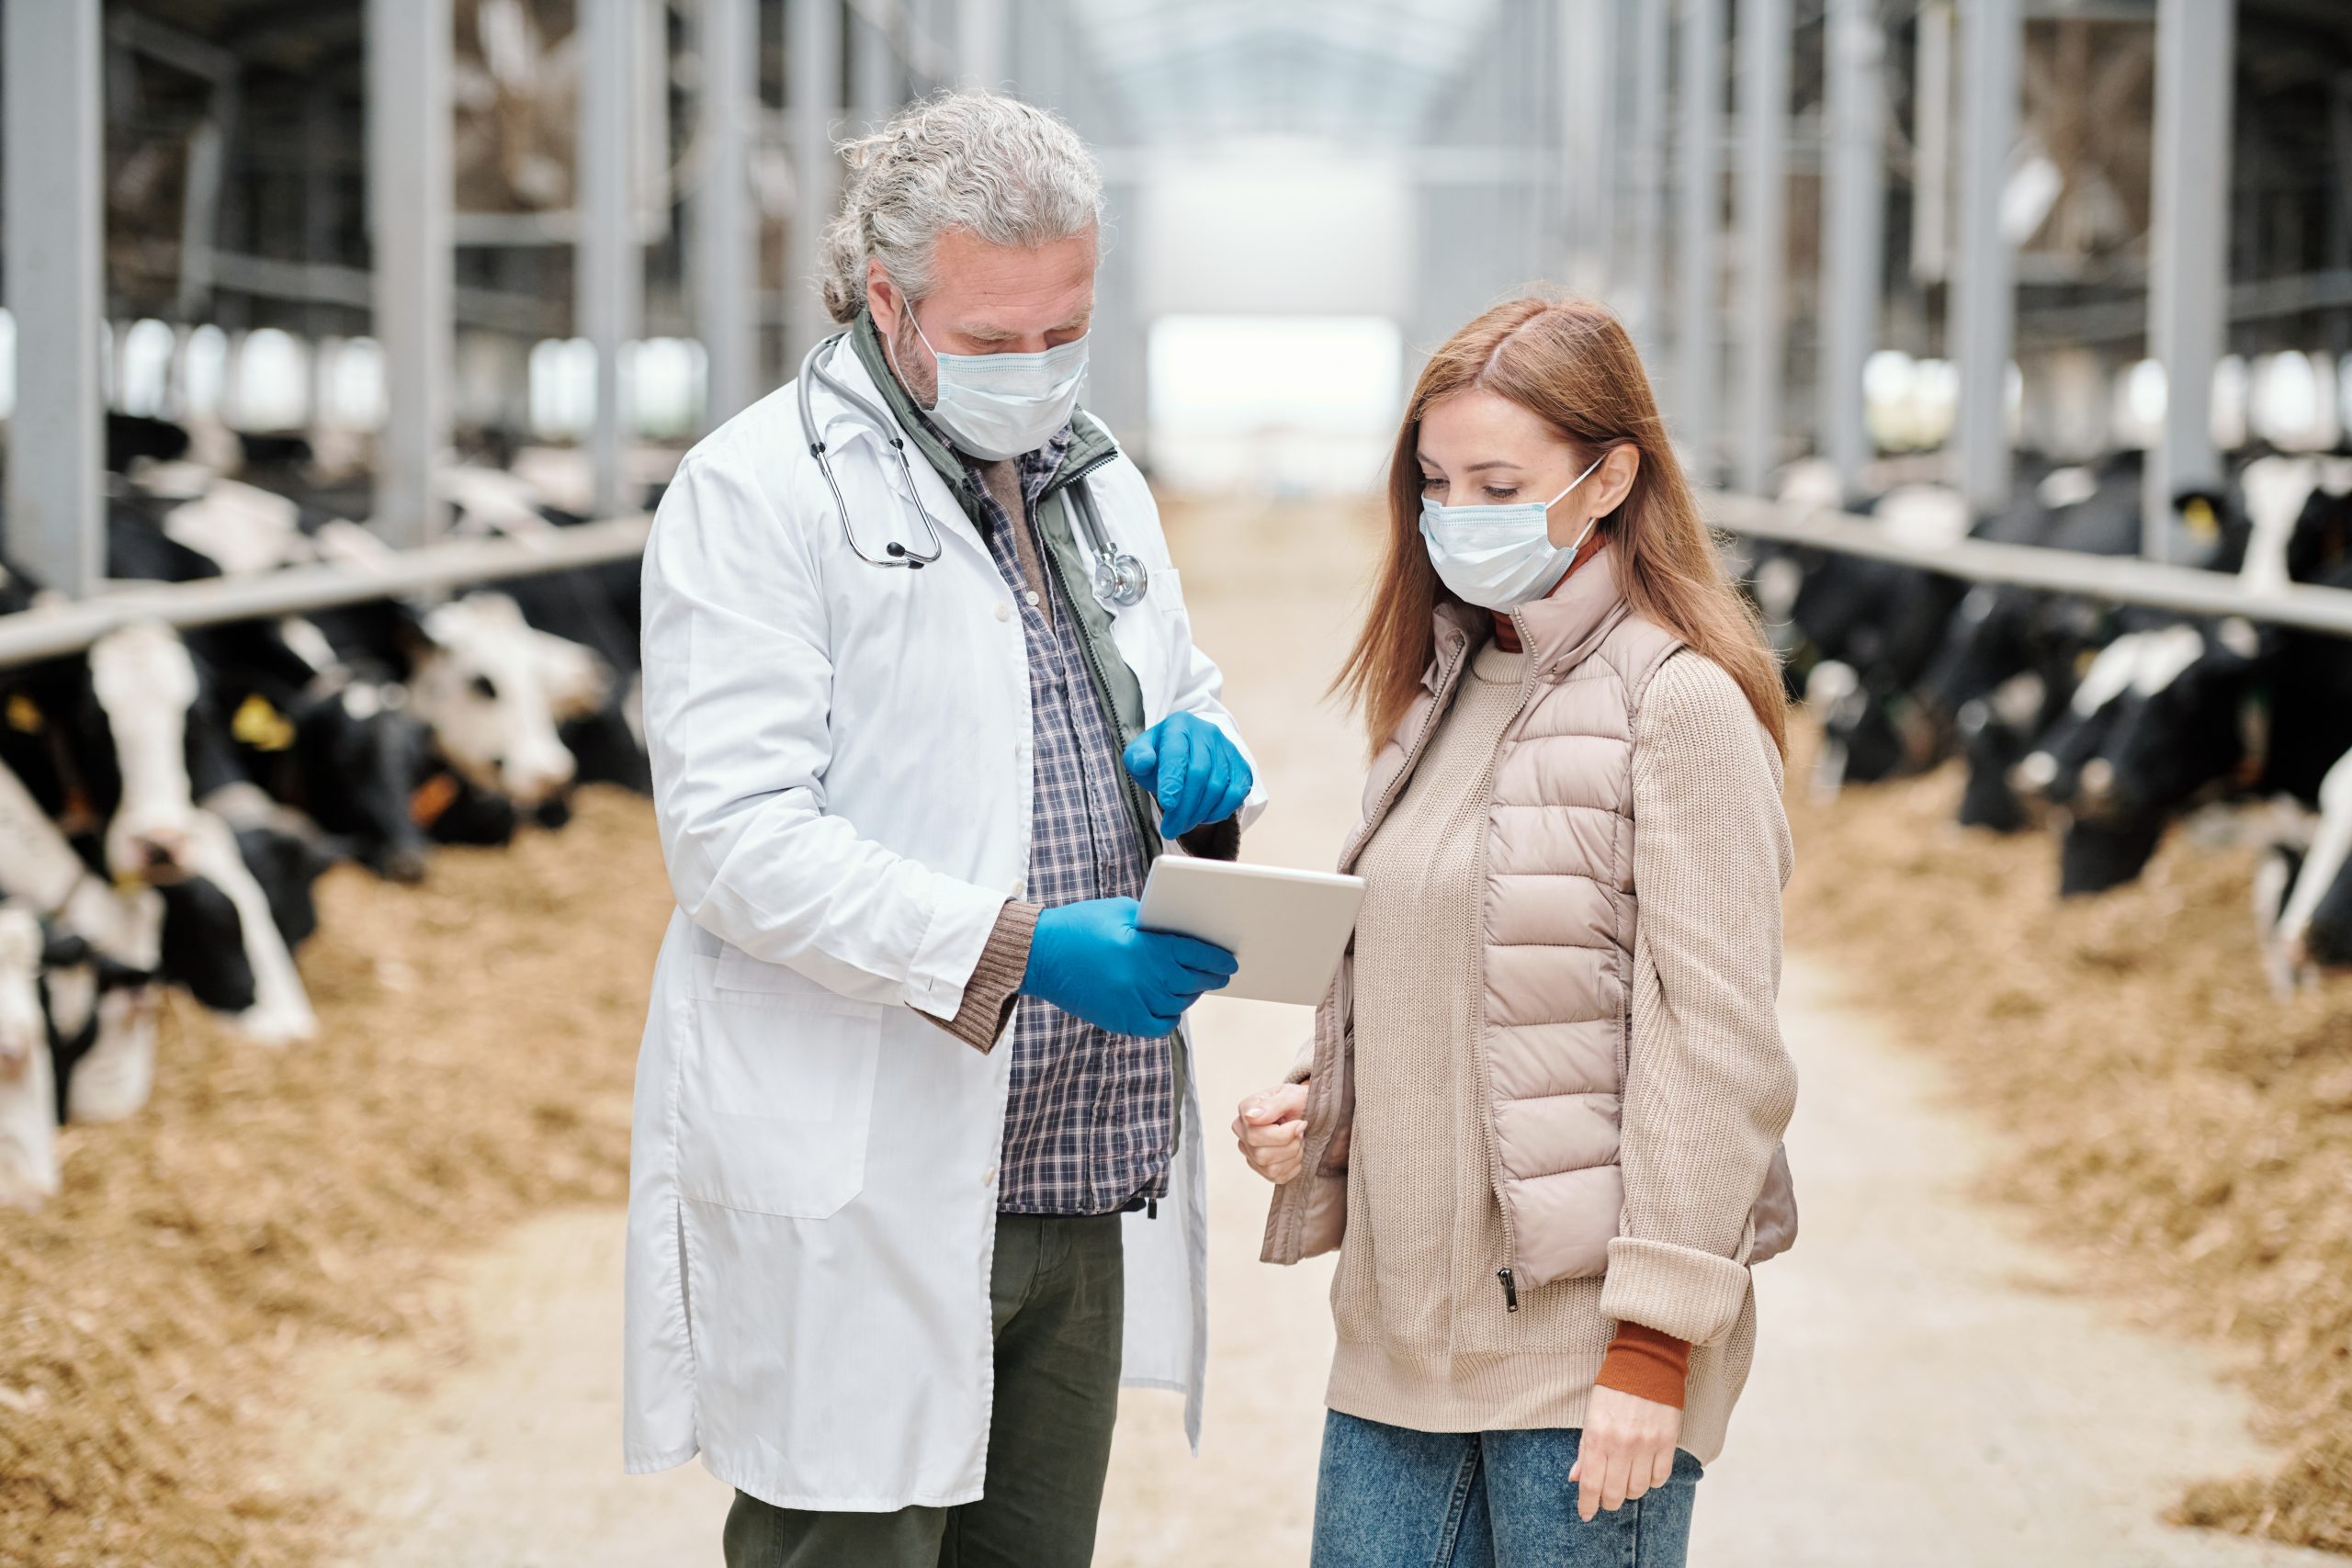 Toma de decisiones de los ganaderos suizos y el papel del veterinario en la reducción del uso de antimicrobianos en las granjas lecheras, foto veterinario y ganadera